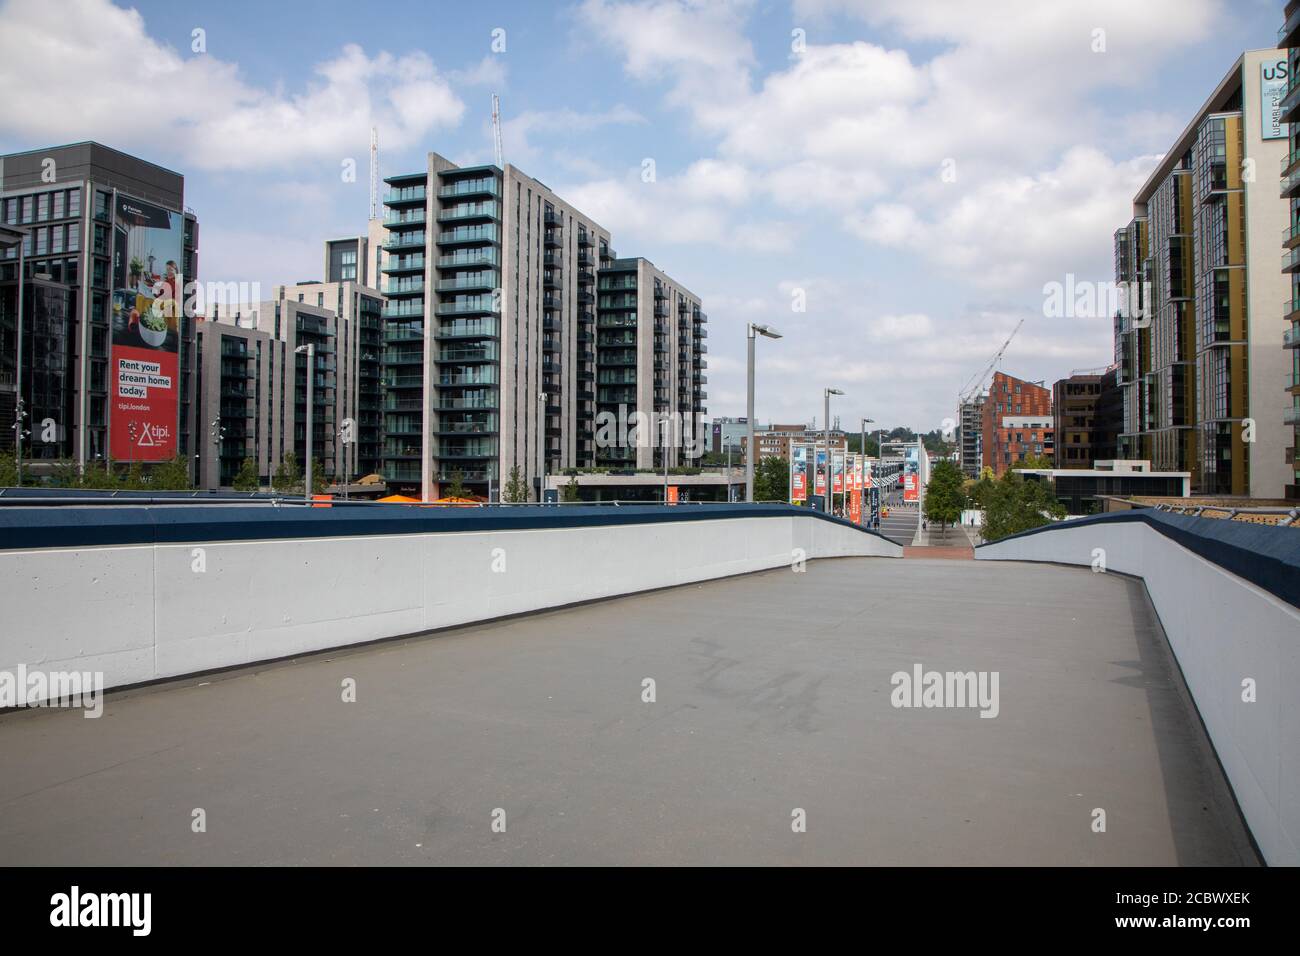 Wembley, con lo stadio dietro e fuori dalla vista. Questa immagine mostra una rampa pedonale con una nuova struttura ad alto rialzo. La Via Olimpica è in lontananza. Foto Stock